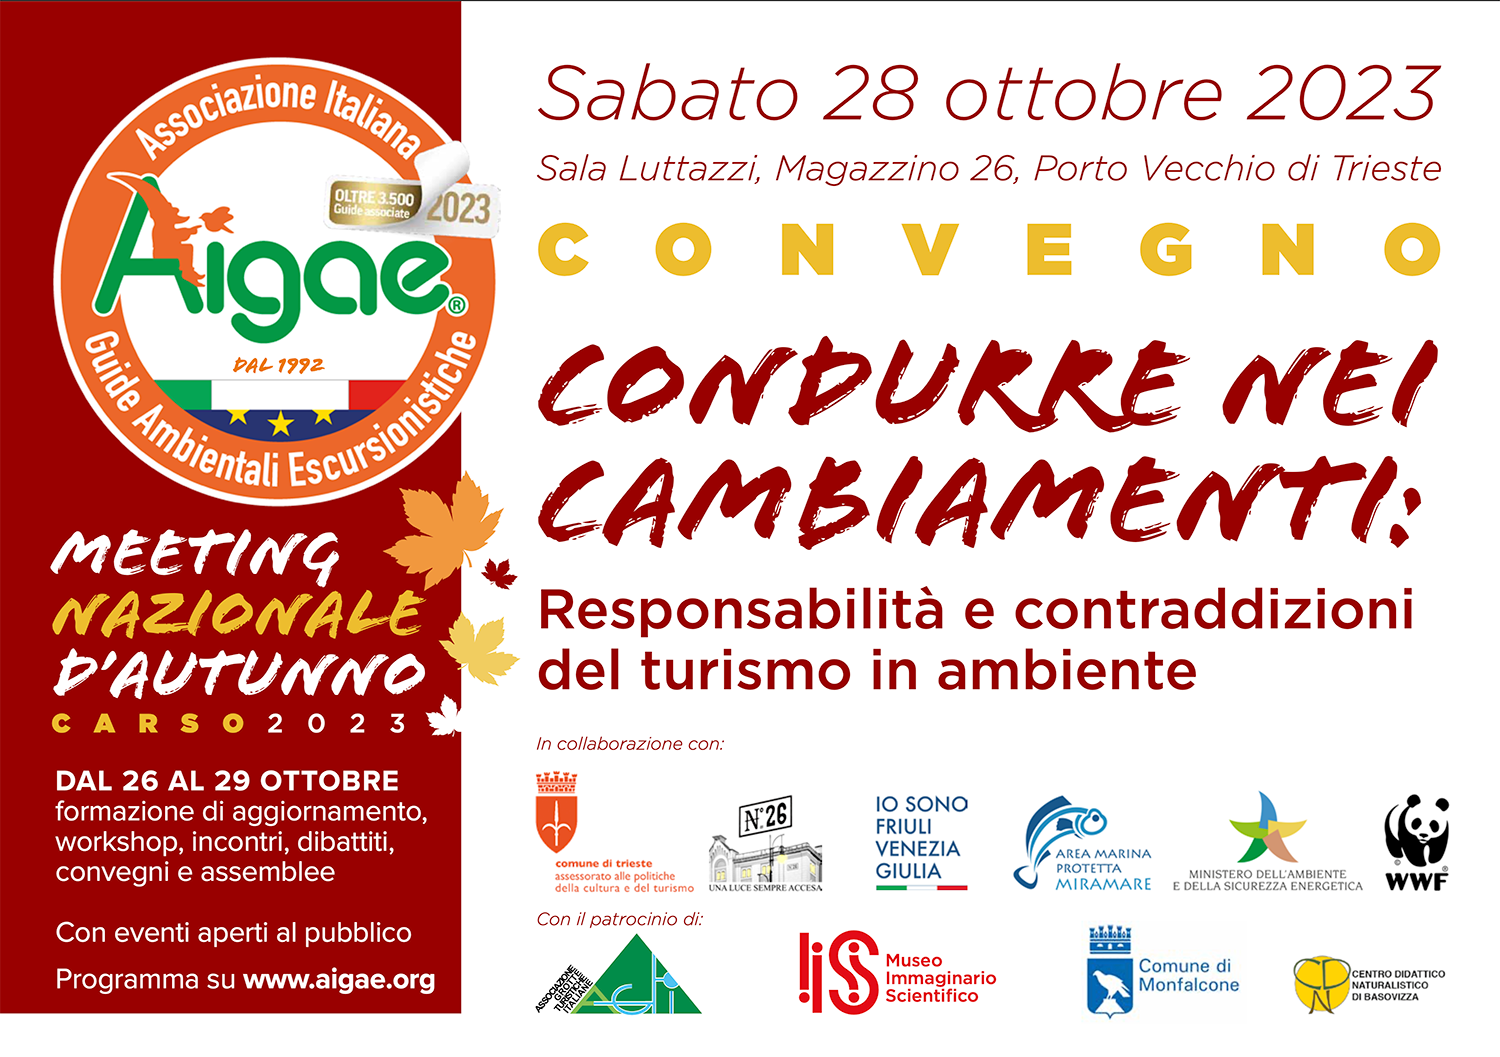 Meeting-del-Carso-2023-Aigae---testata-convegno